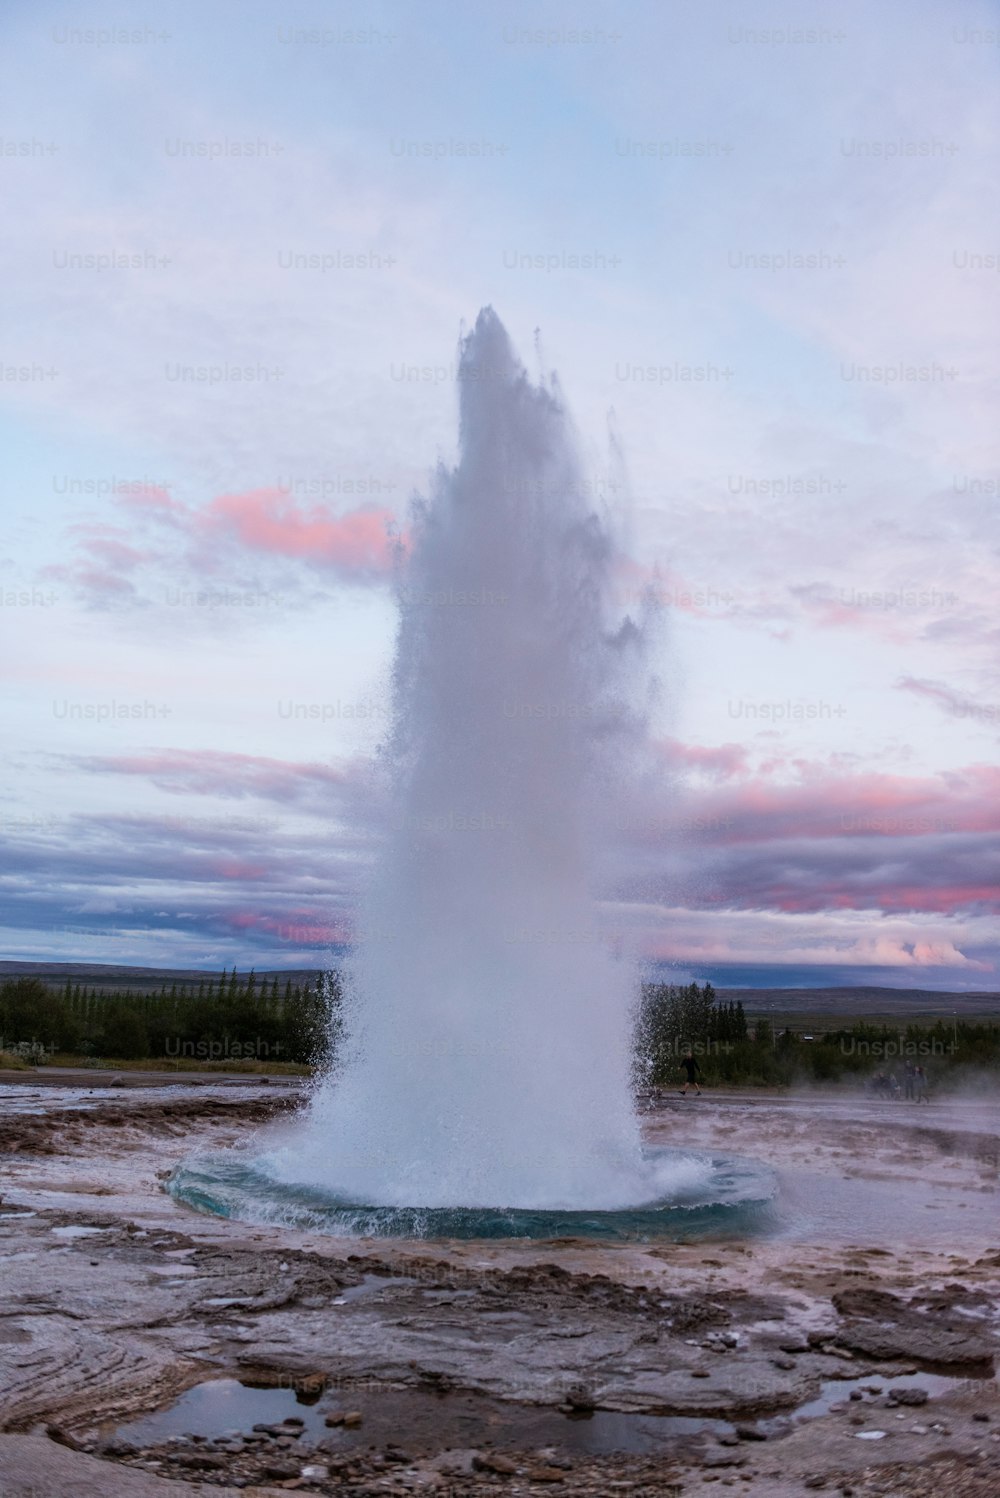 Un geyser che vomita acqua nell'aria